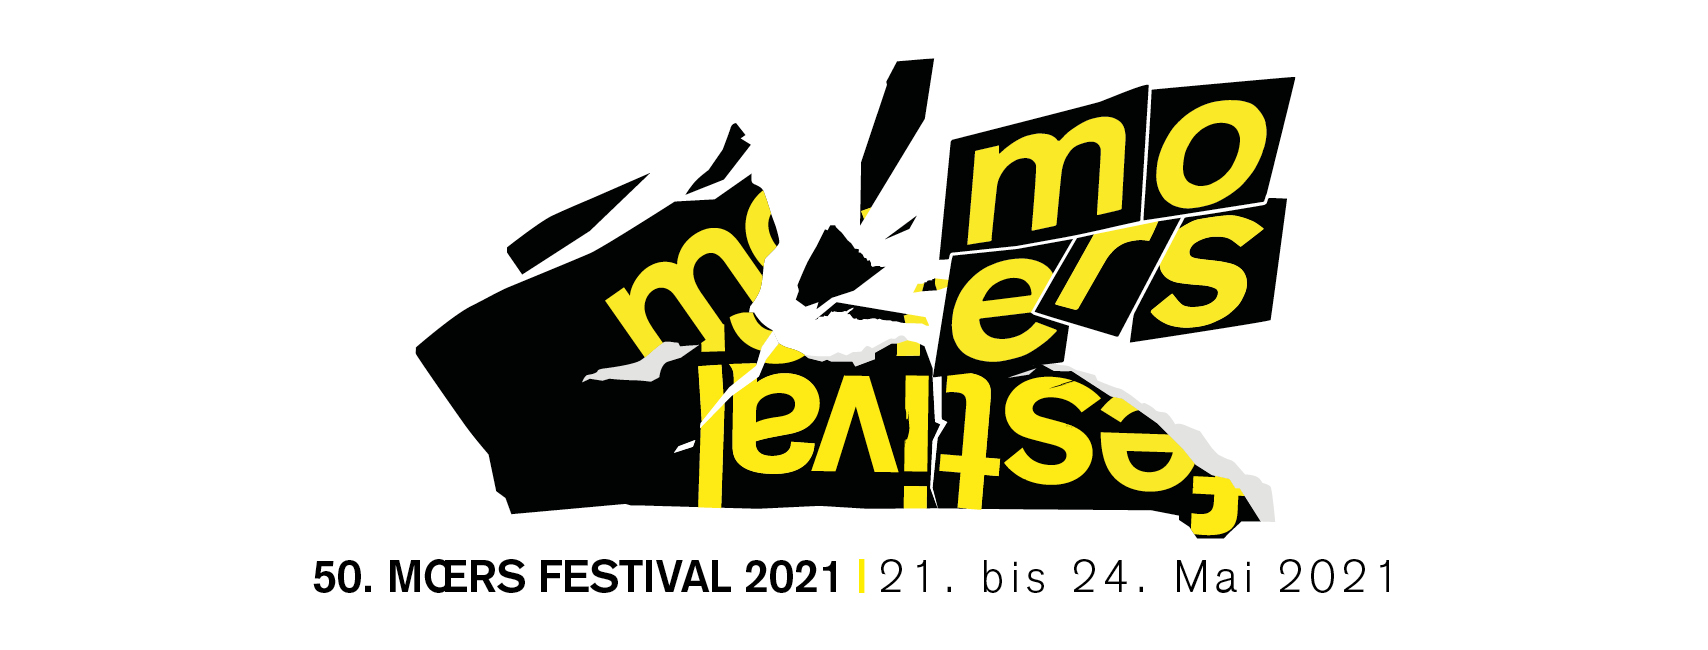 Moers Festival 2021